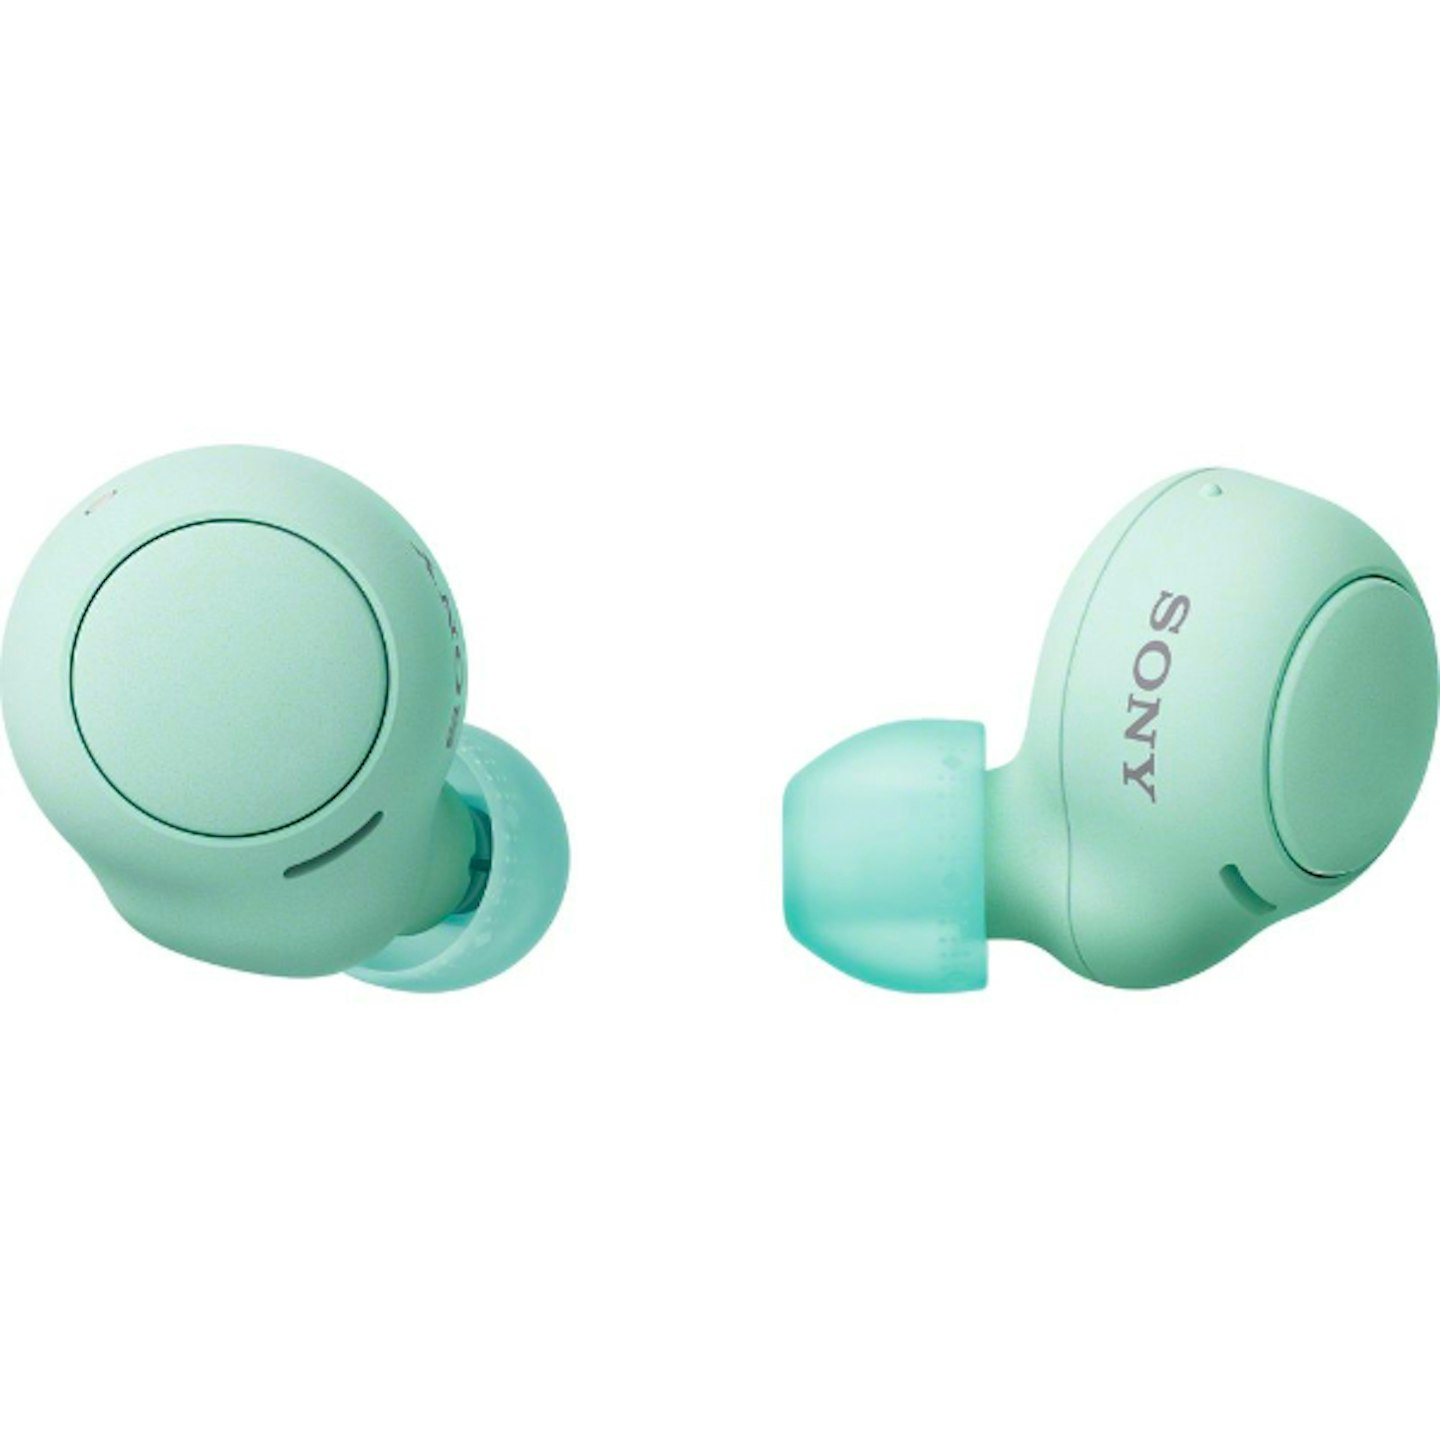 SONY WF-C500 Wireless Bluetooth Earbuds